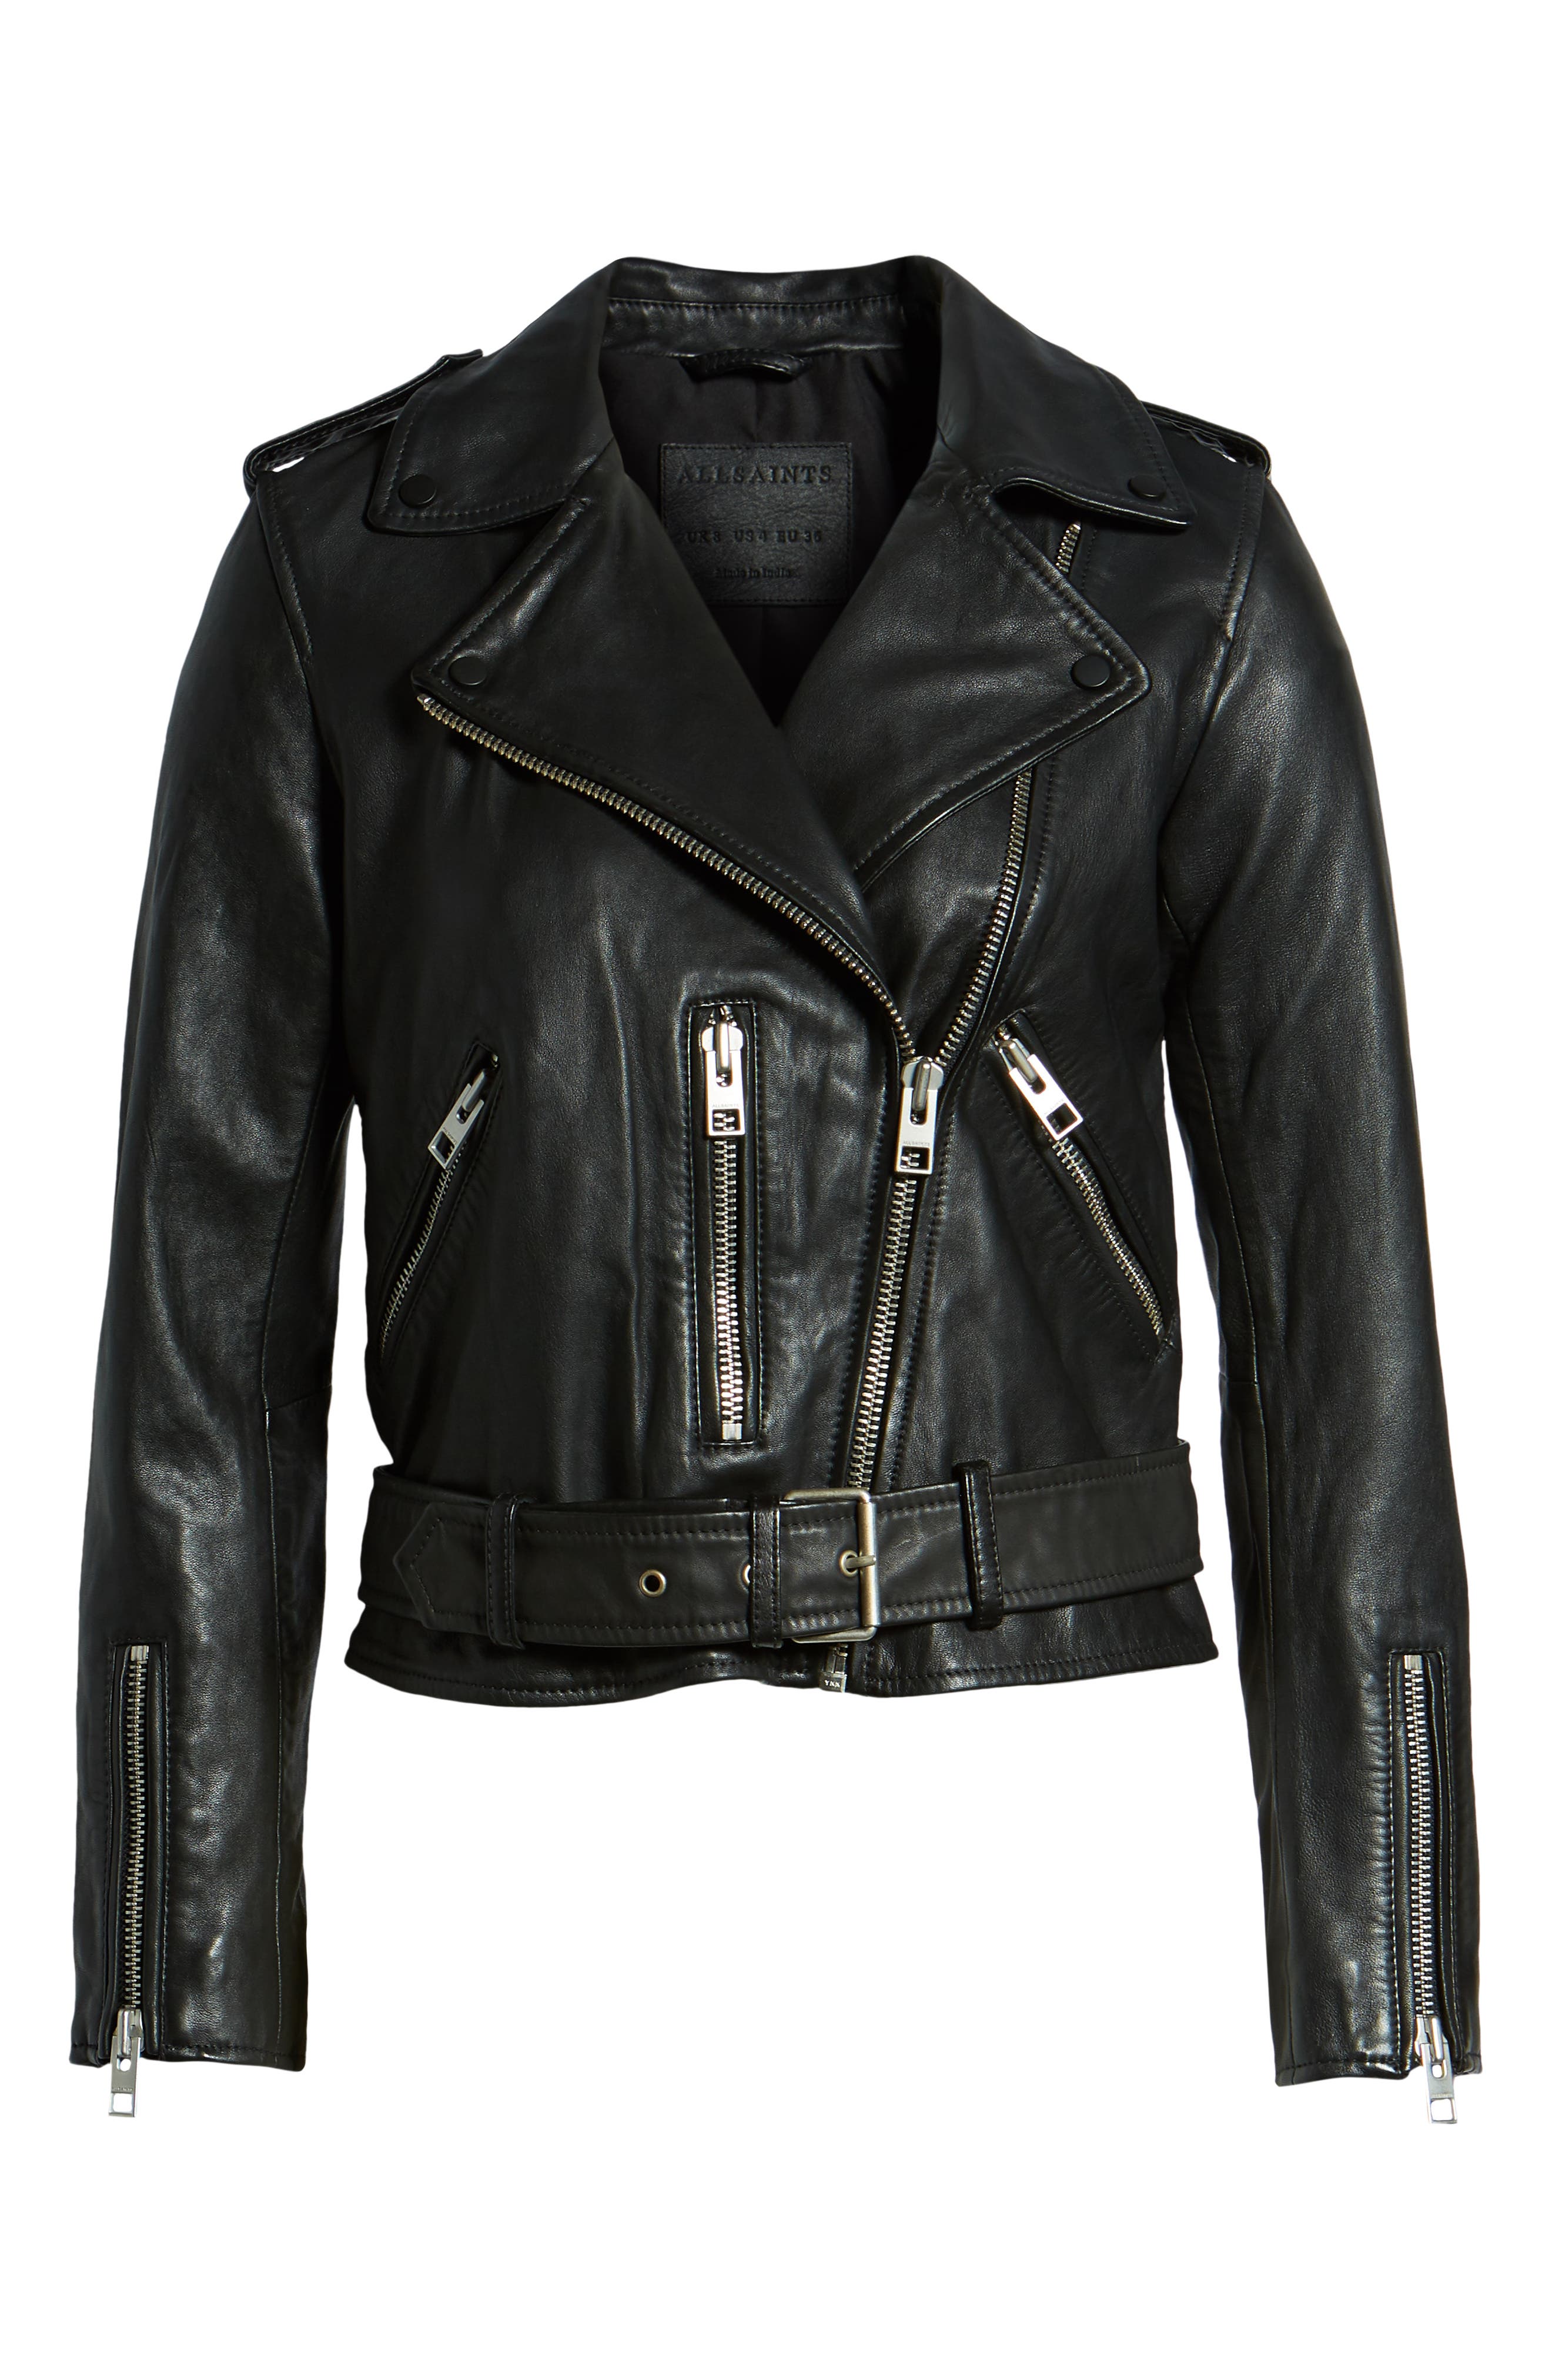 Navy Blue M Bershka biker jacket WOMEN FASHION Jackets Biker jacket Jean discount 94% 